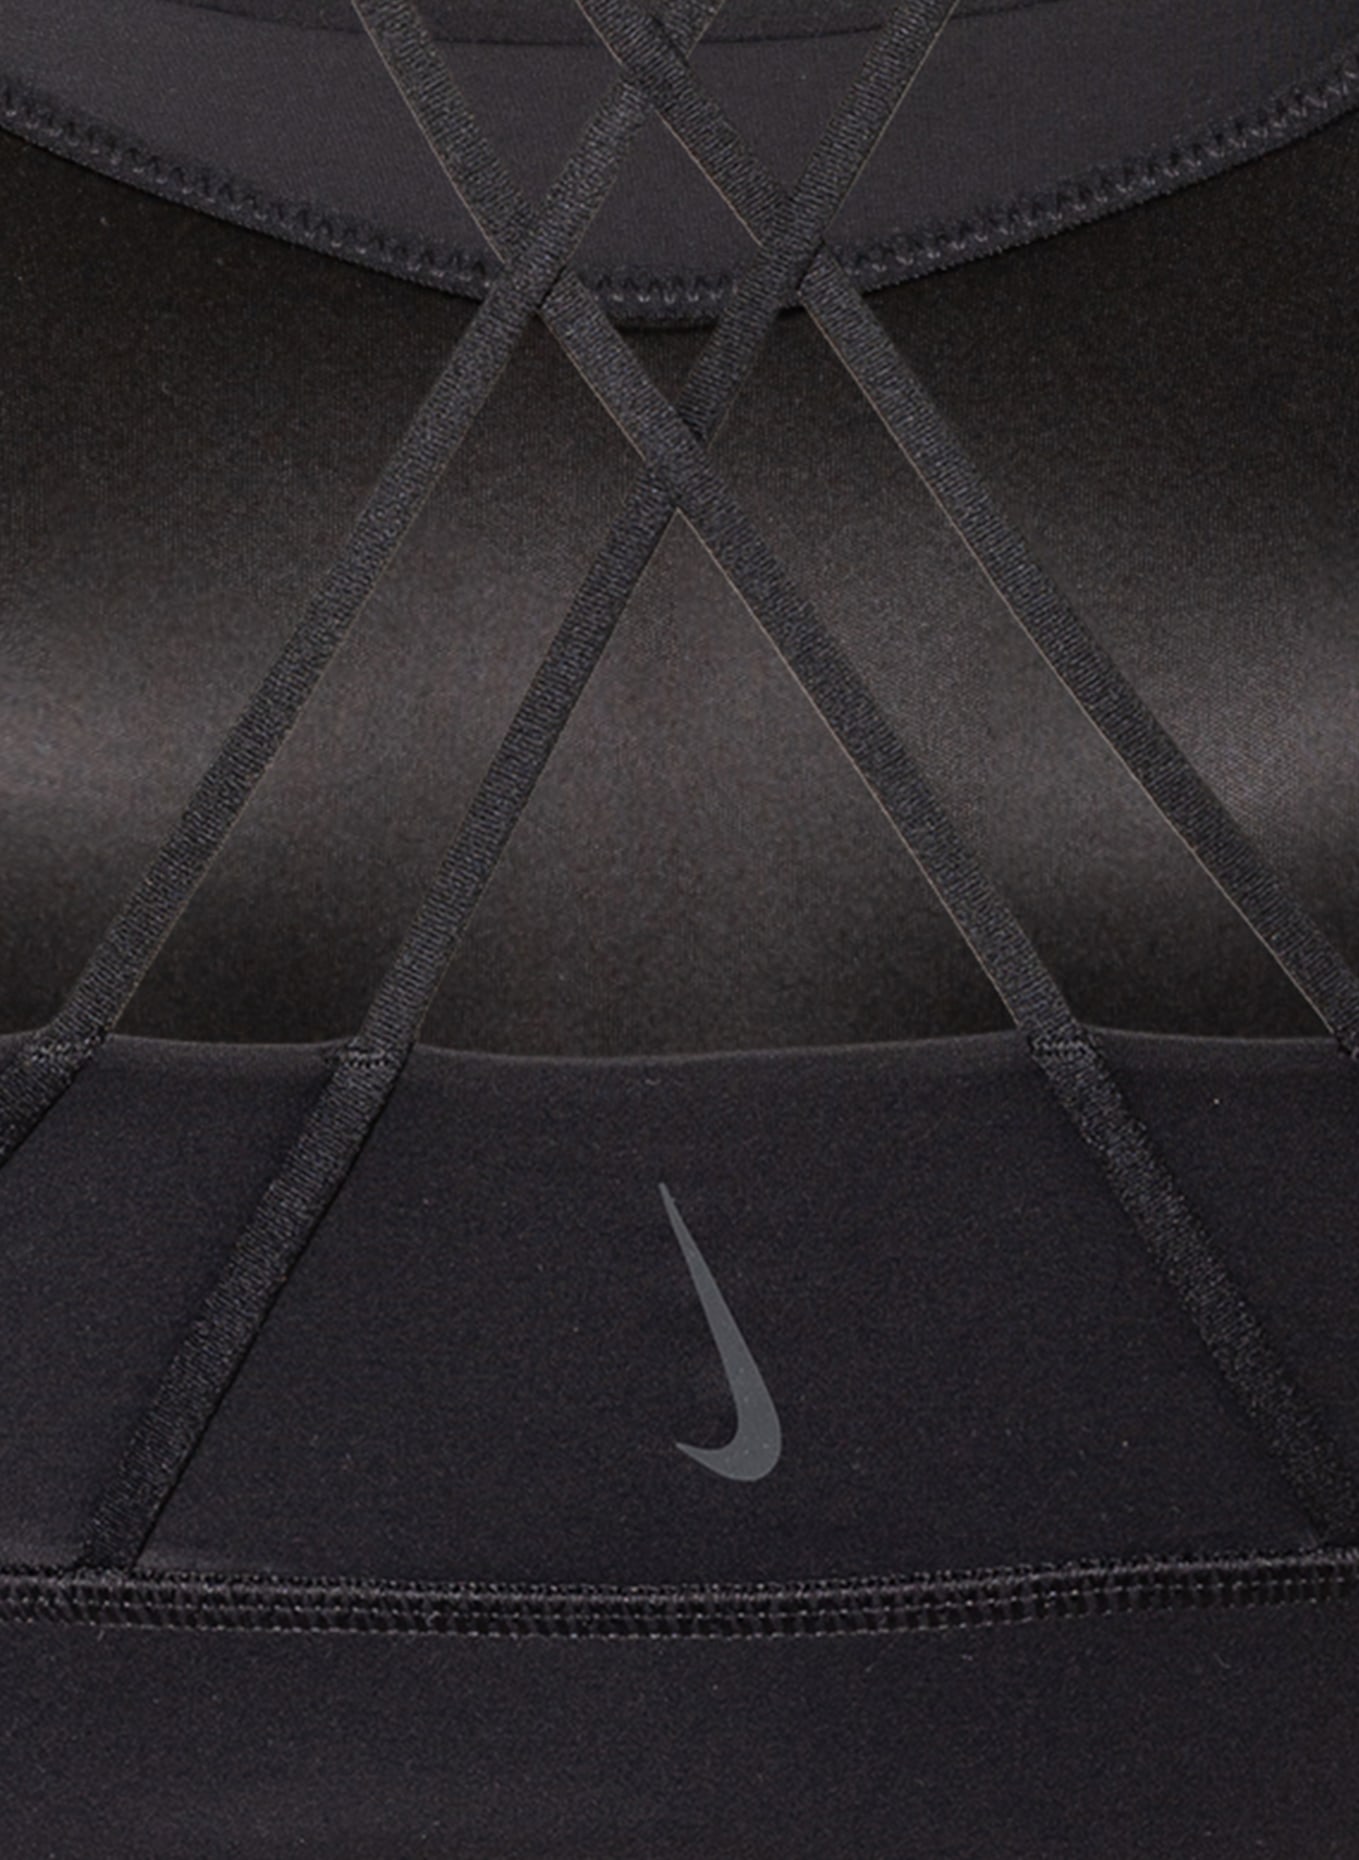 Nike Sports bra SWOOSH LUXE in black